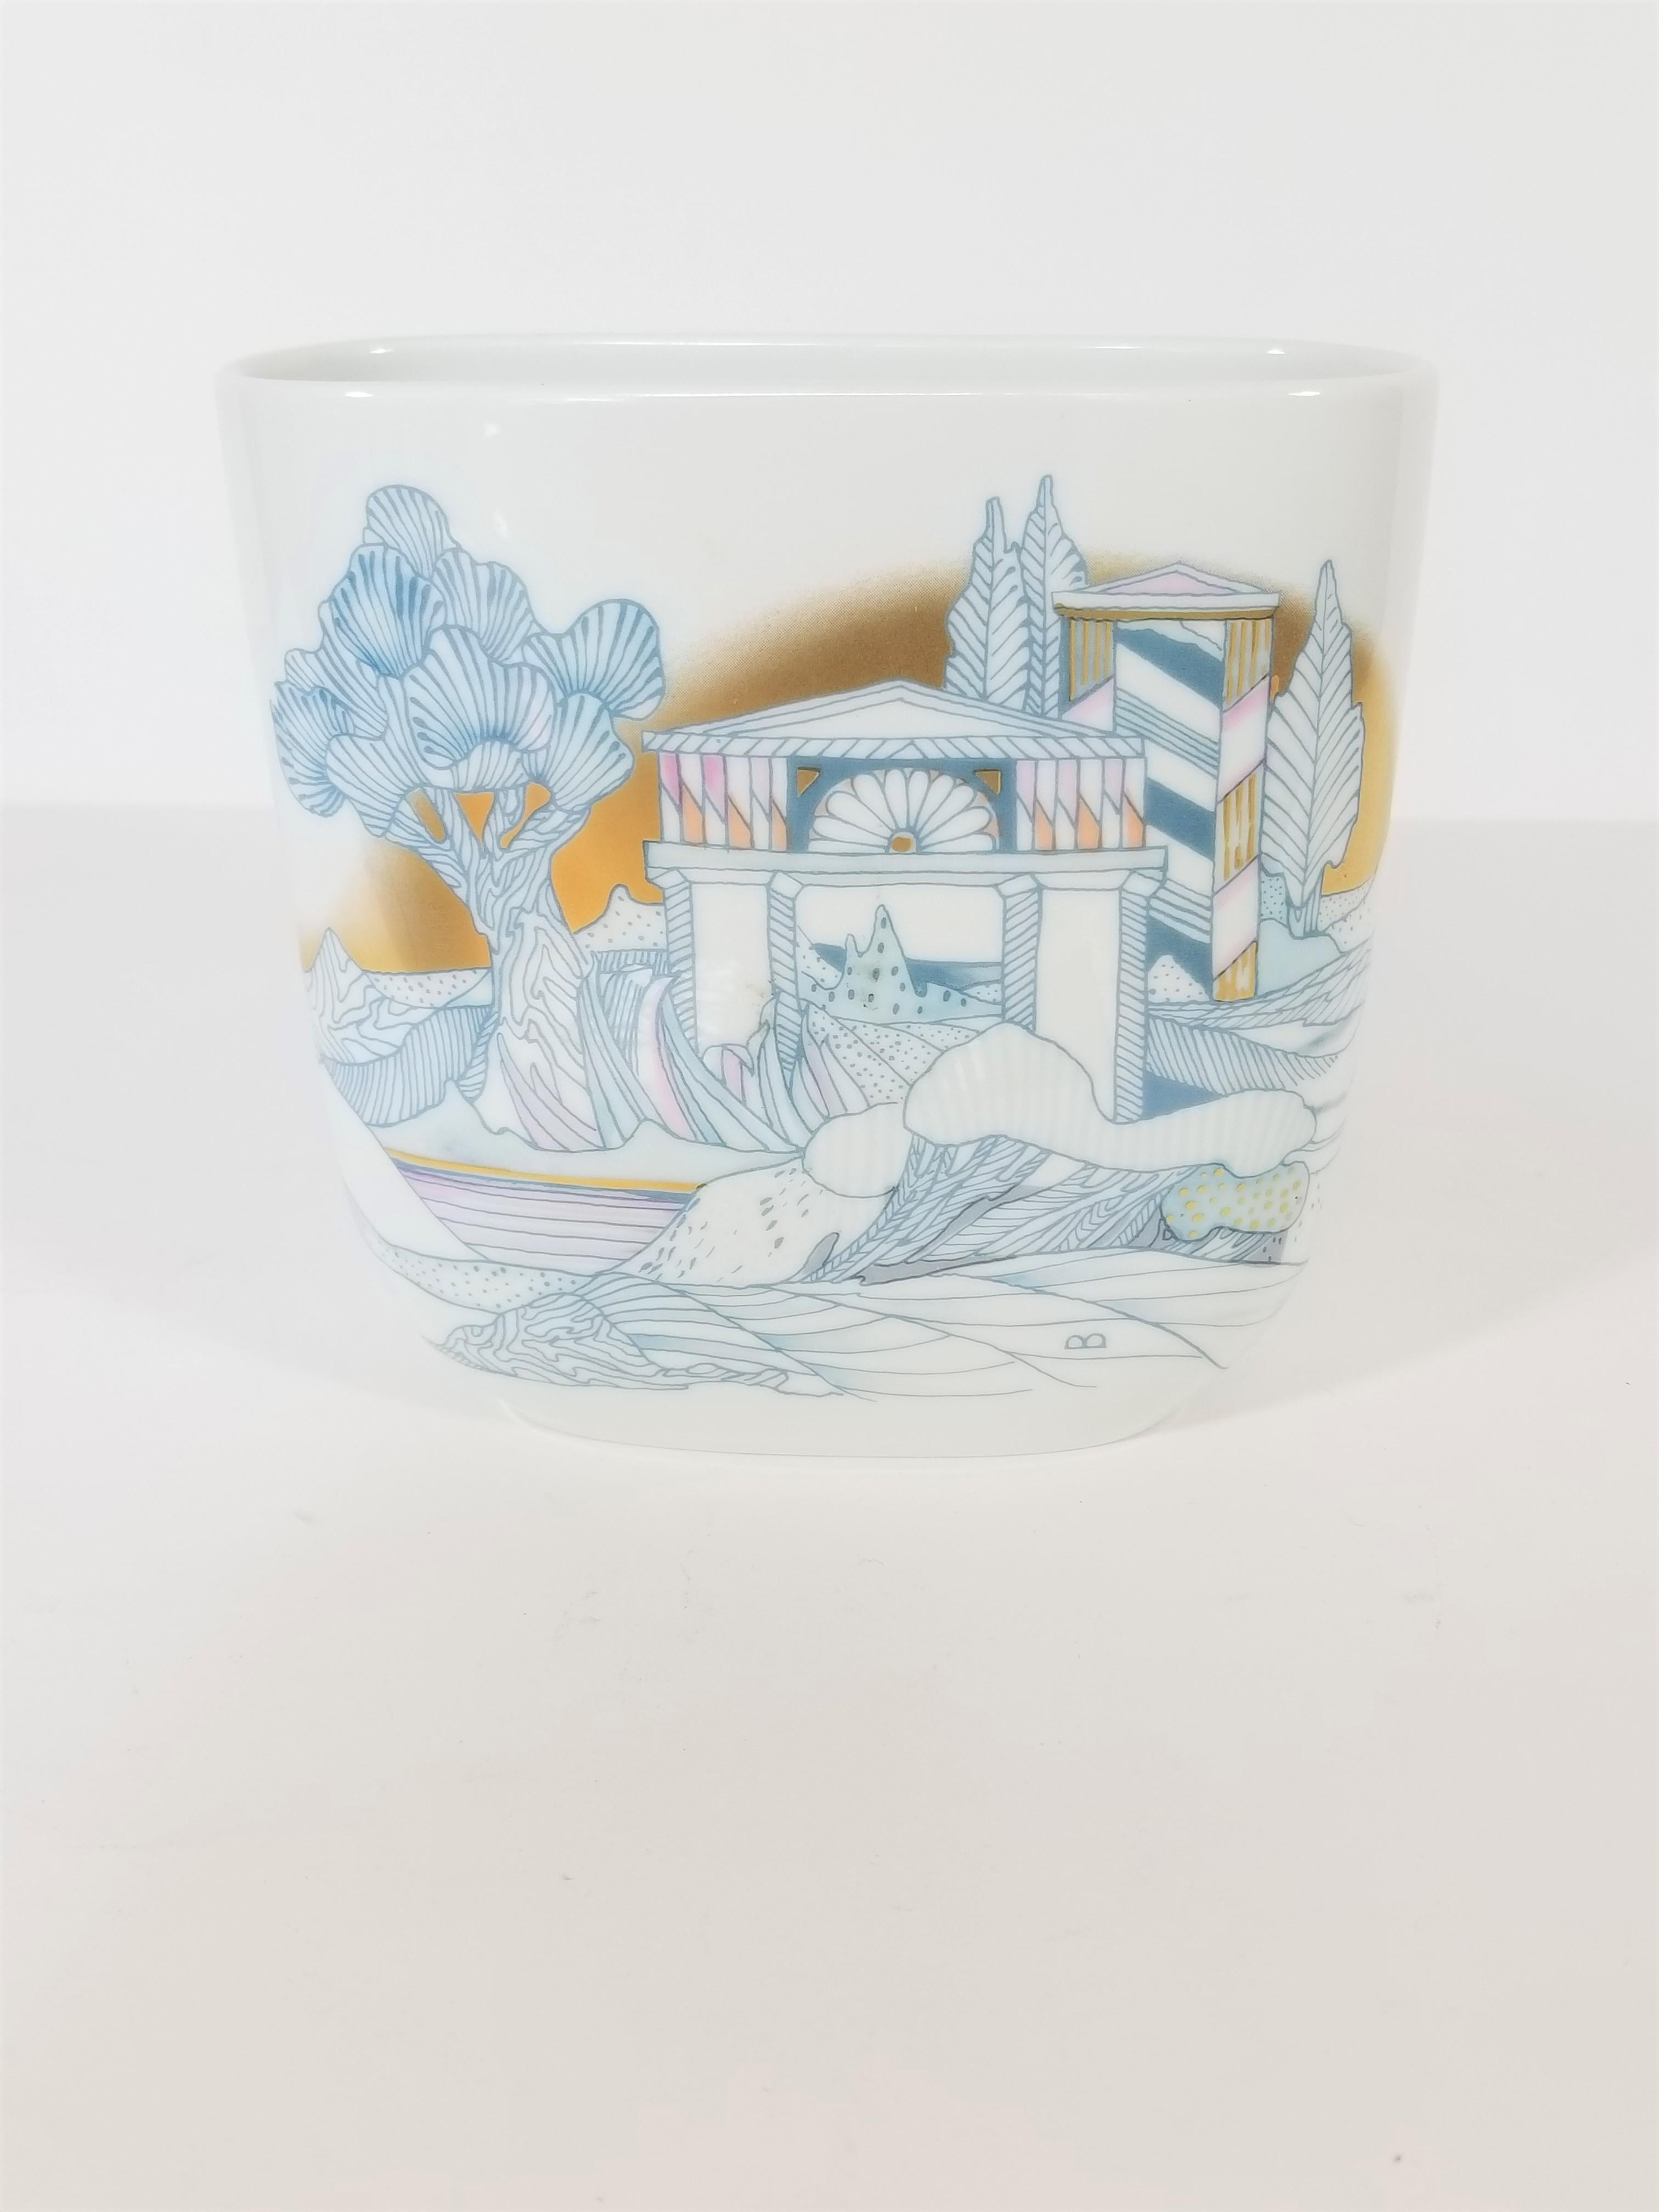  Rosenthal, Vase Germany Porcelain Mid Century 1970s Asian Inspired  5